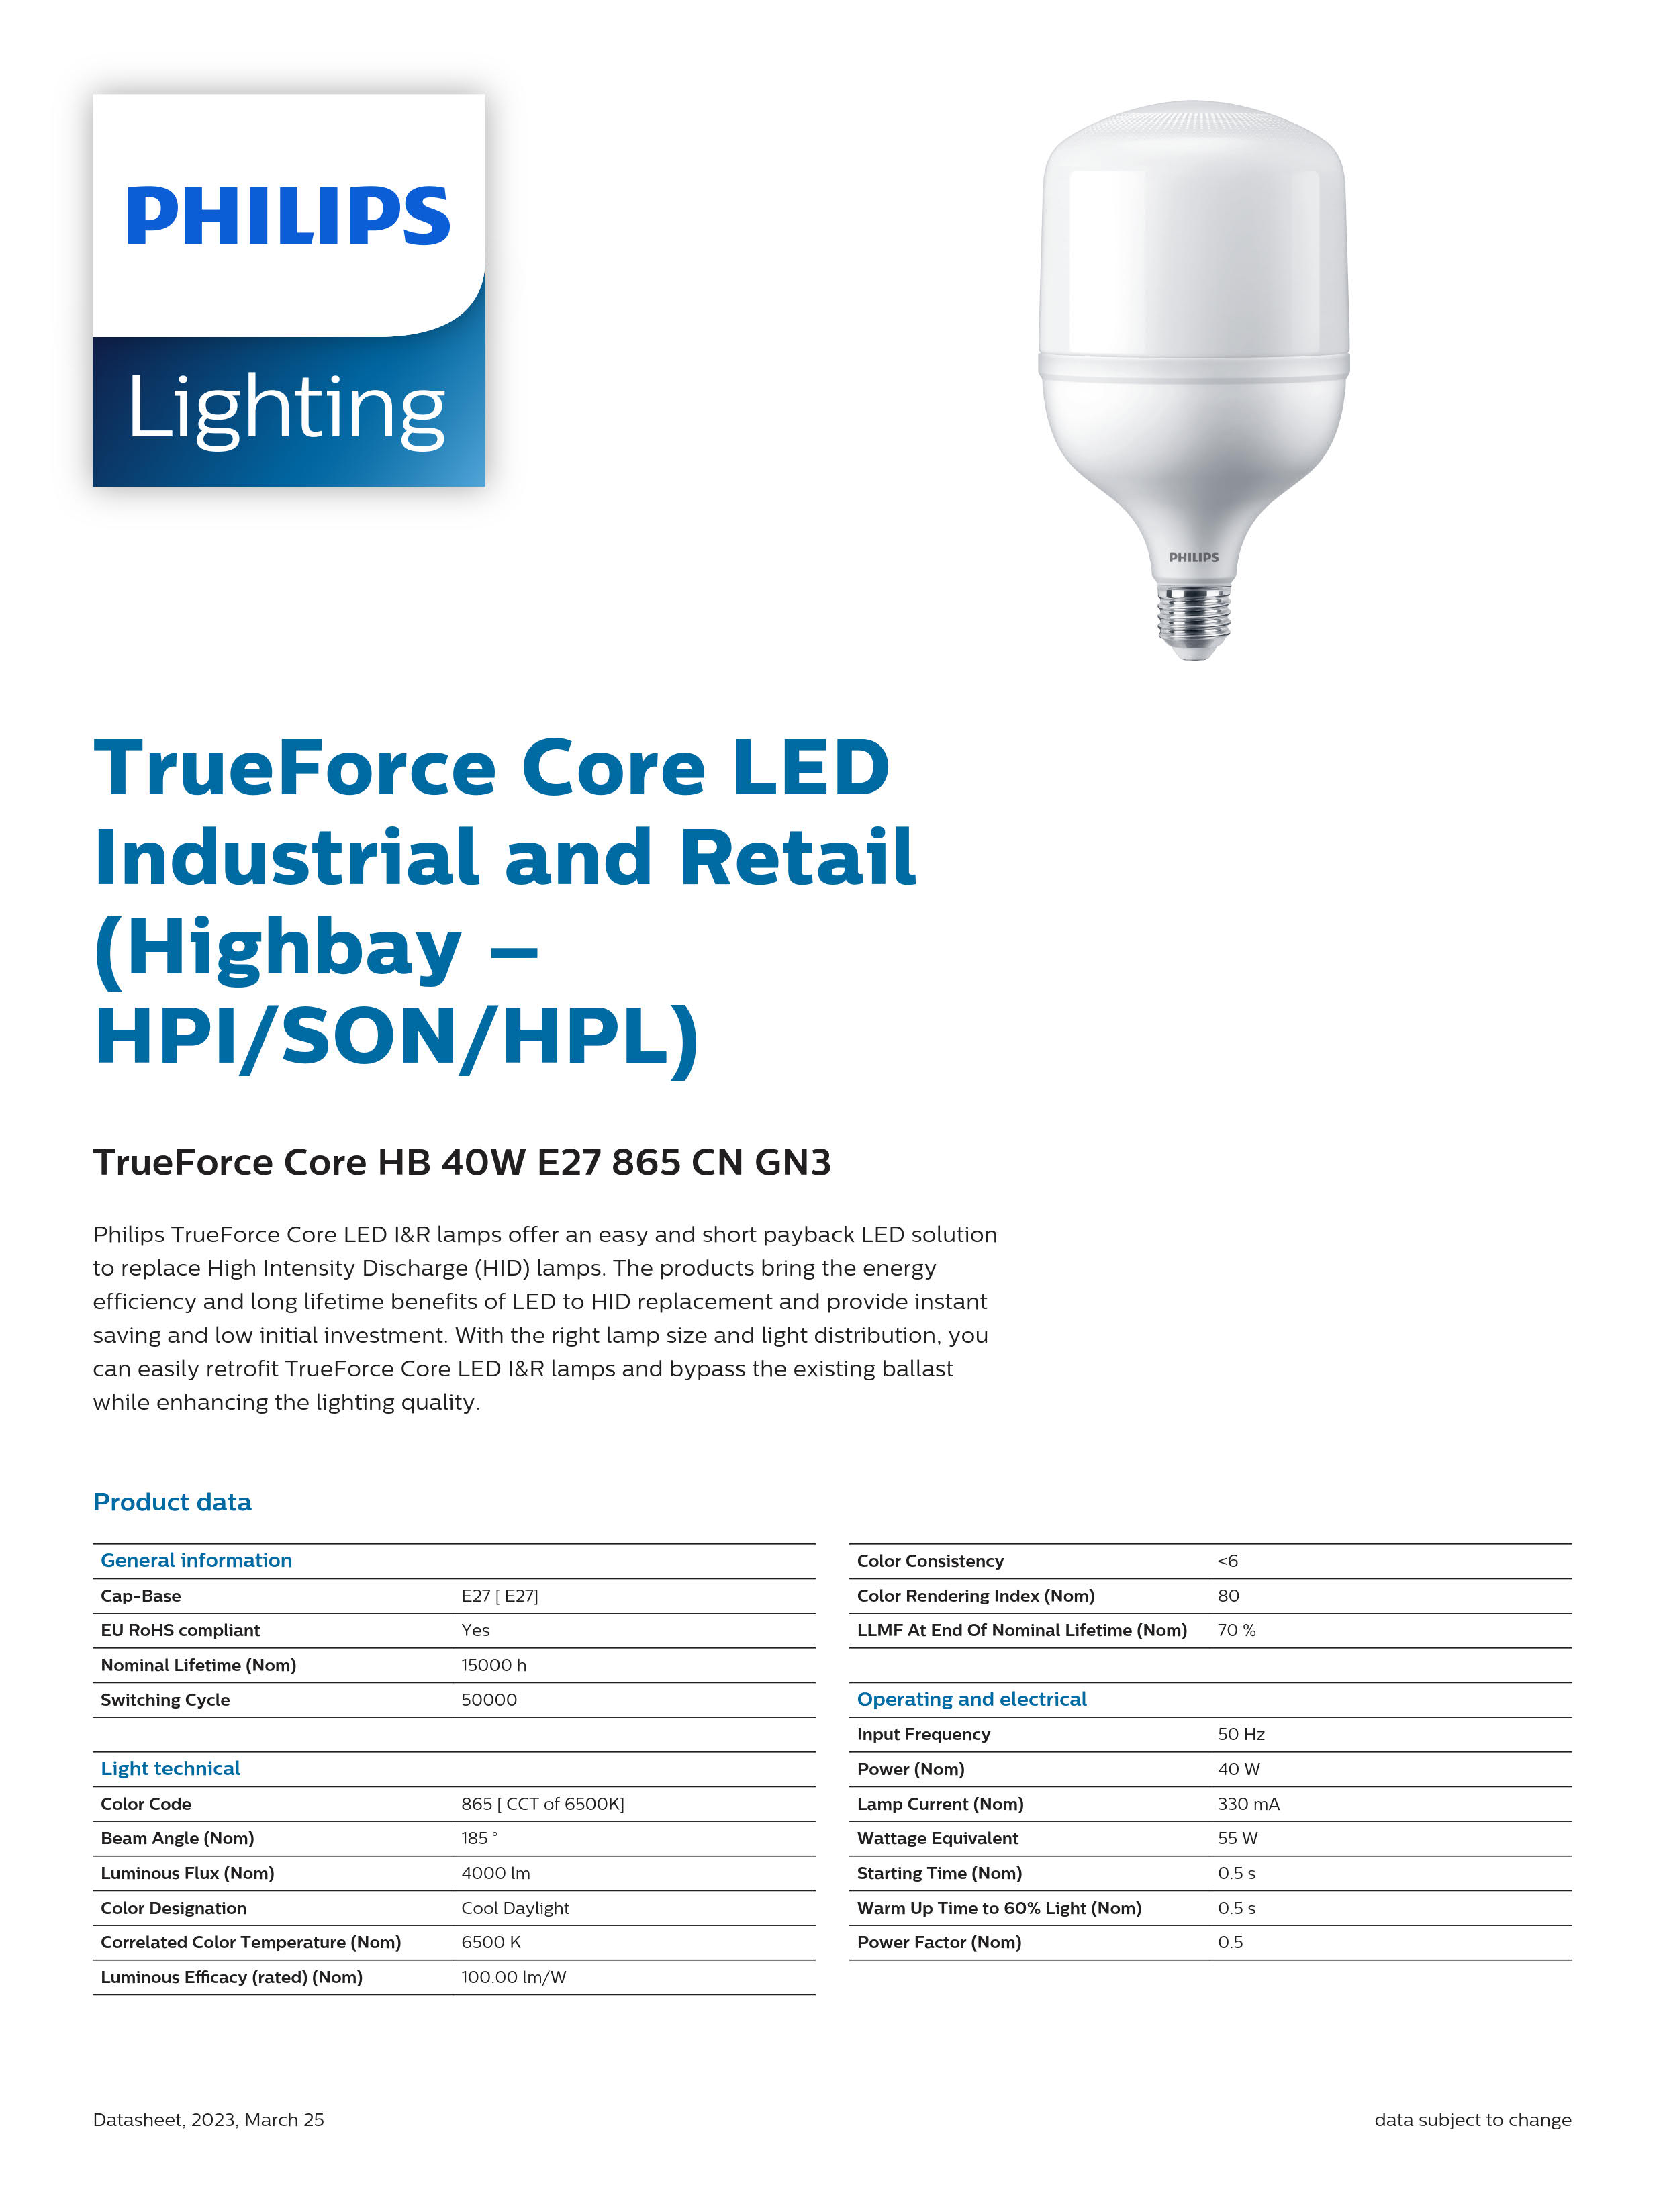 PHILIPS LED Bulb TrueForce Core HB 40W E27 865 CN GN3 29002408610